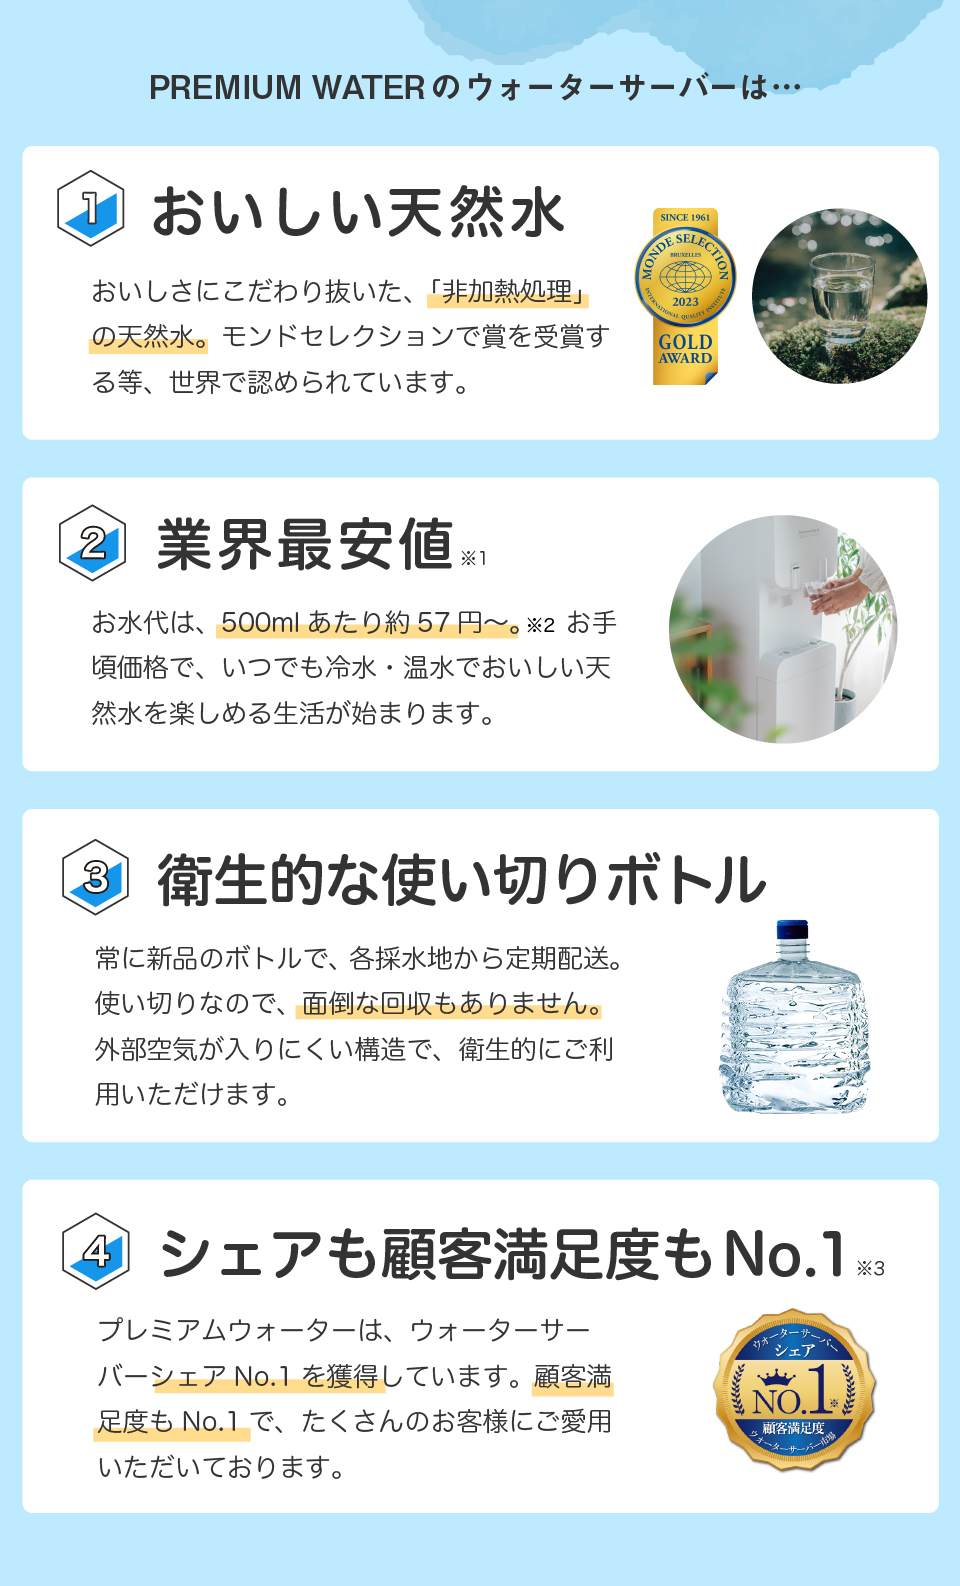 【おいしい天然水のウォーターサーバー】プレミアムウォーターは顧客満足度No.1!